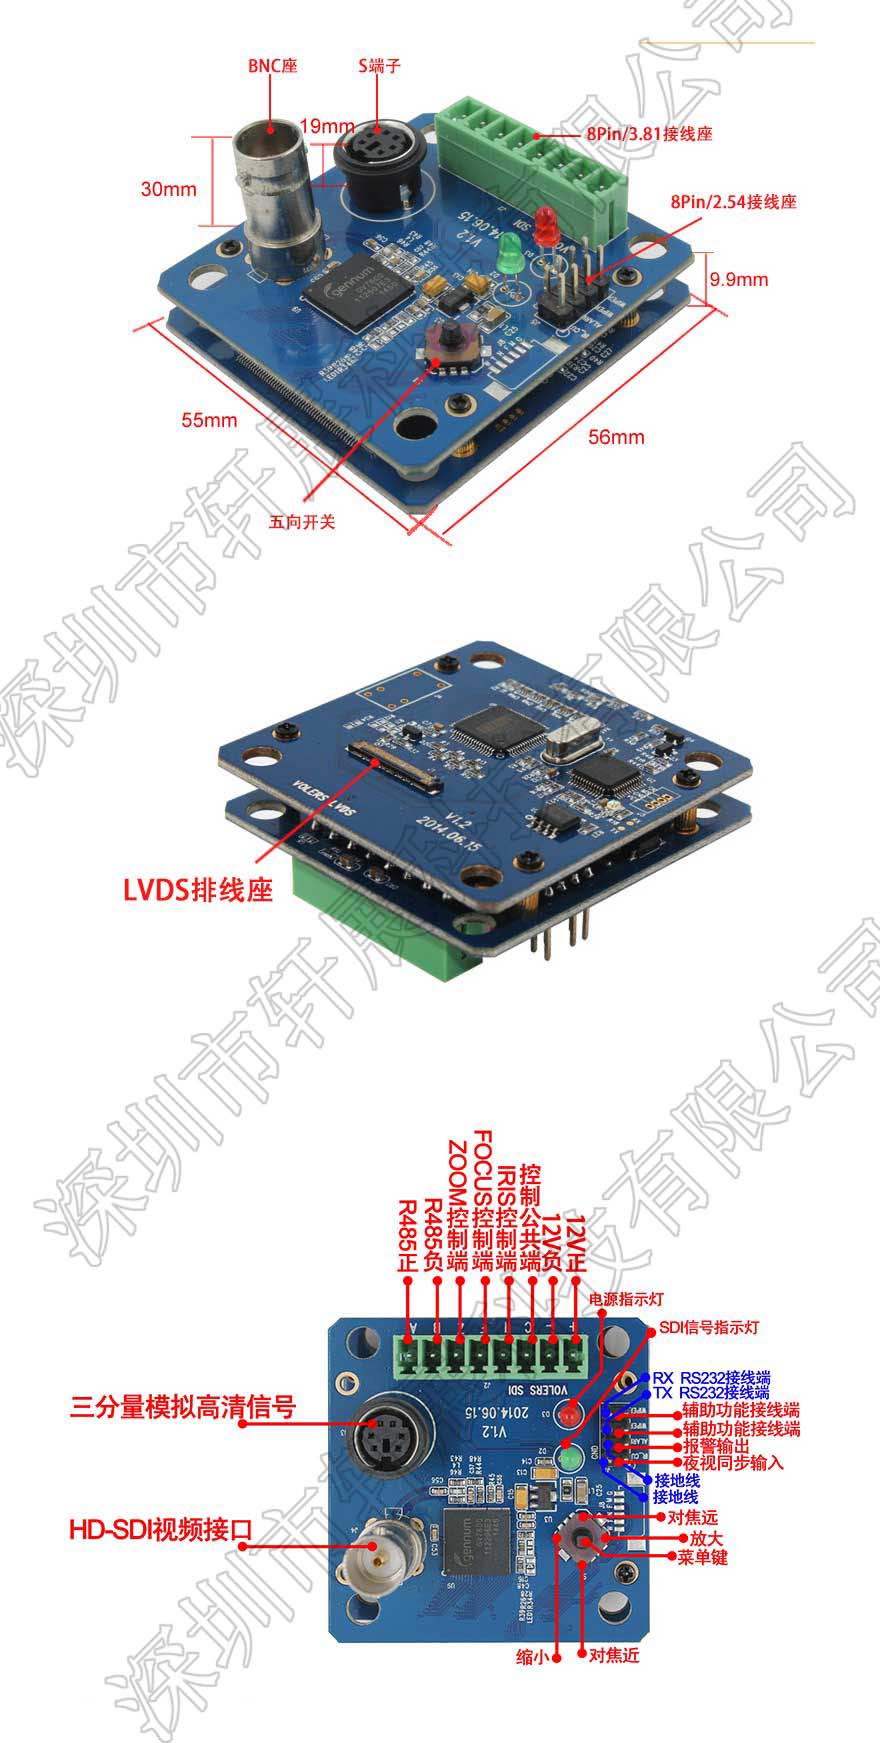 HD-SDI/3G-SDI编码控制板